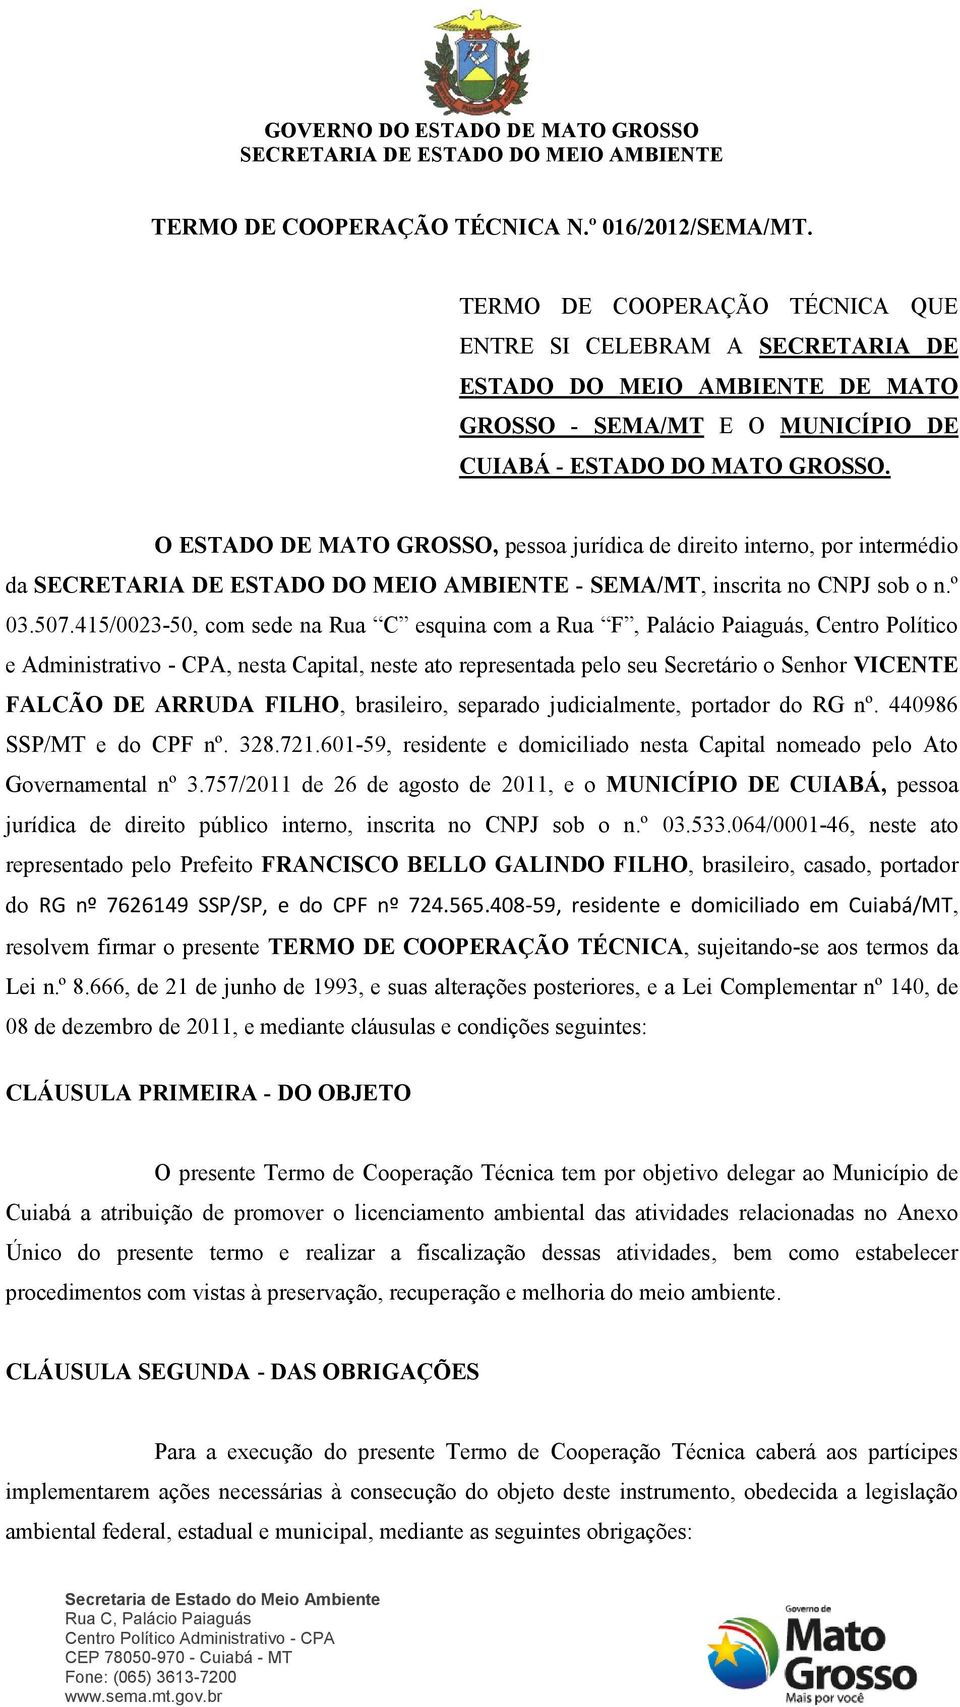 O ESTADO DE MATO GROSSO, pessoa jurídica de direito interno, por intermédio da - SEMA/MT, inscrita no CNPJ sob o n.º 03.507.